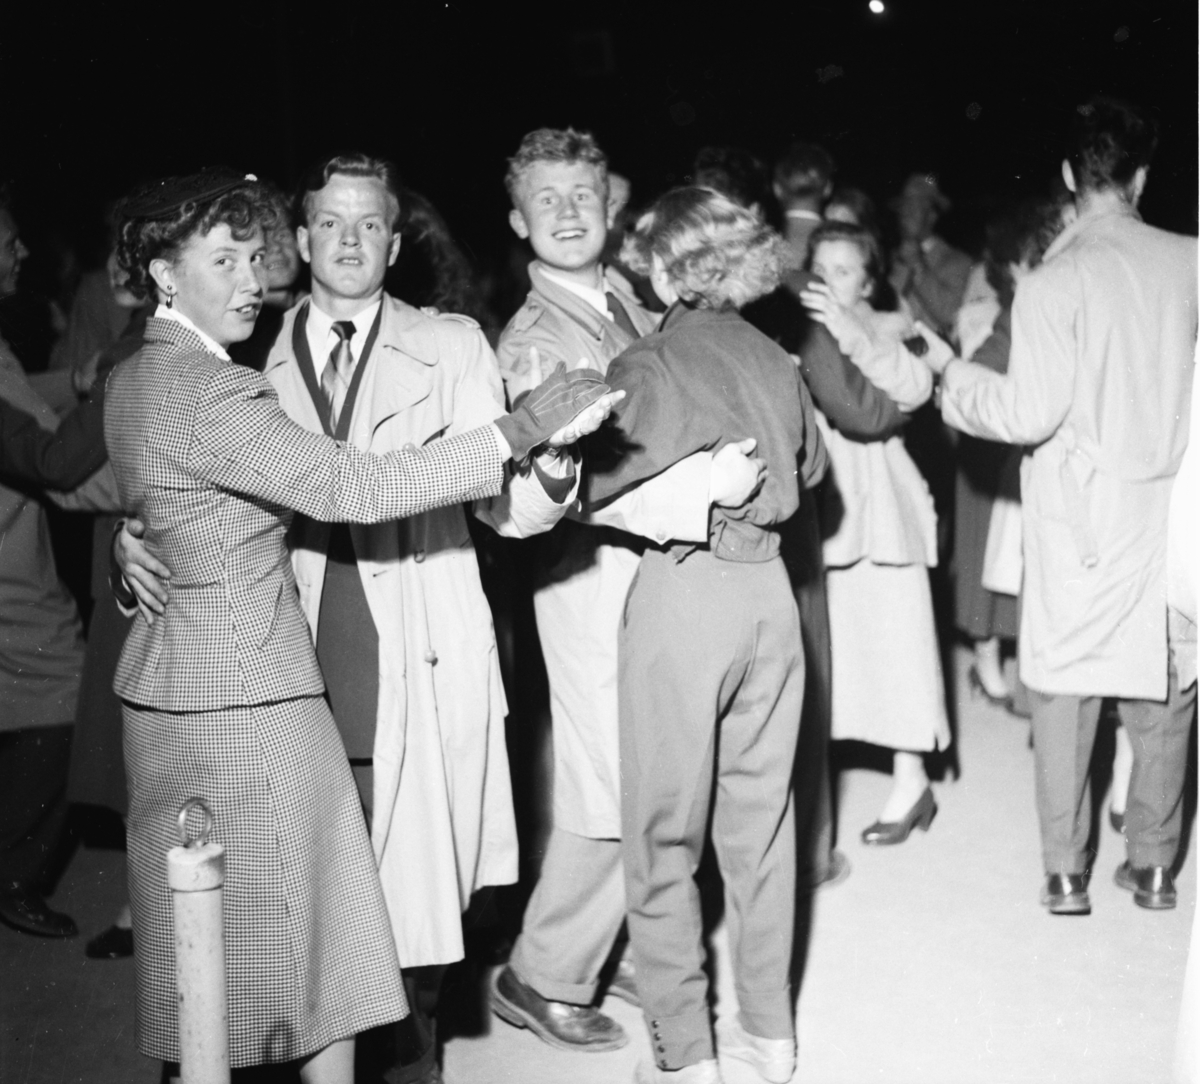 Vardens arkiv. "Første dansen i Brekkeparken"  15.05.1954